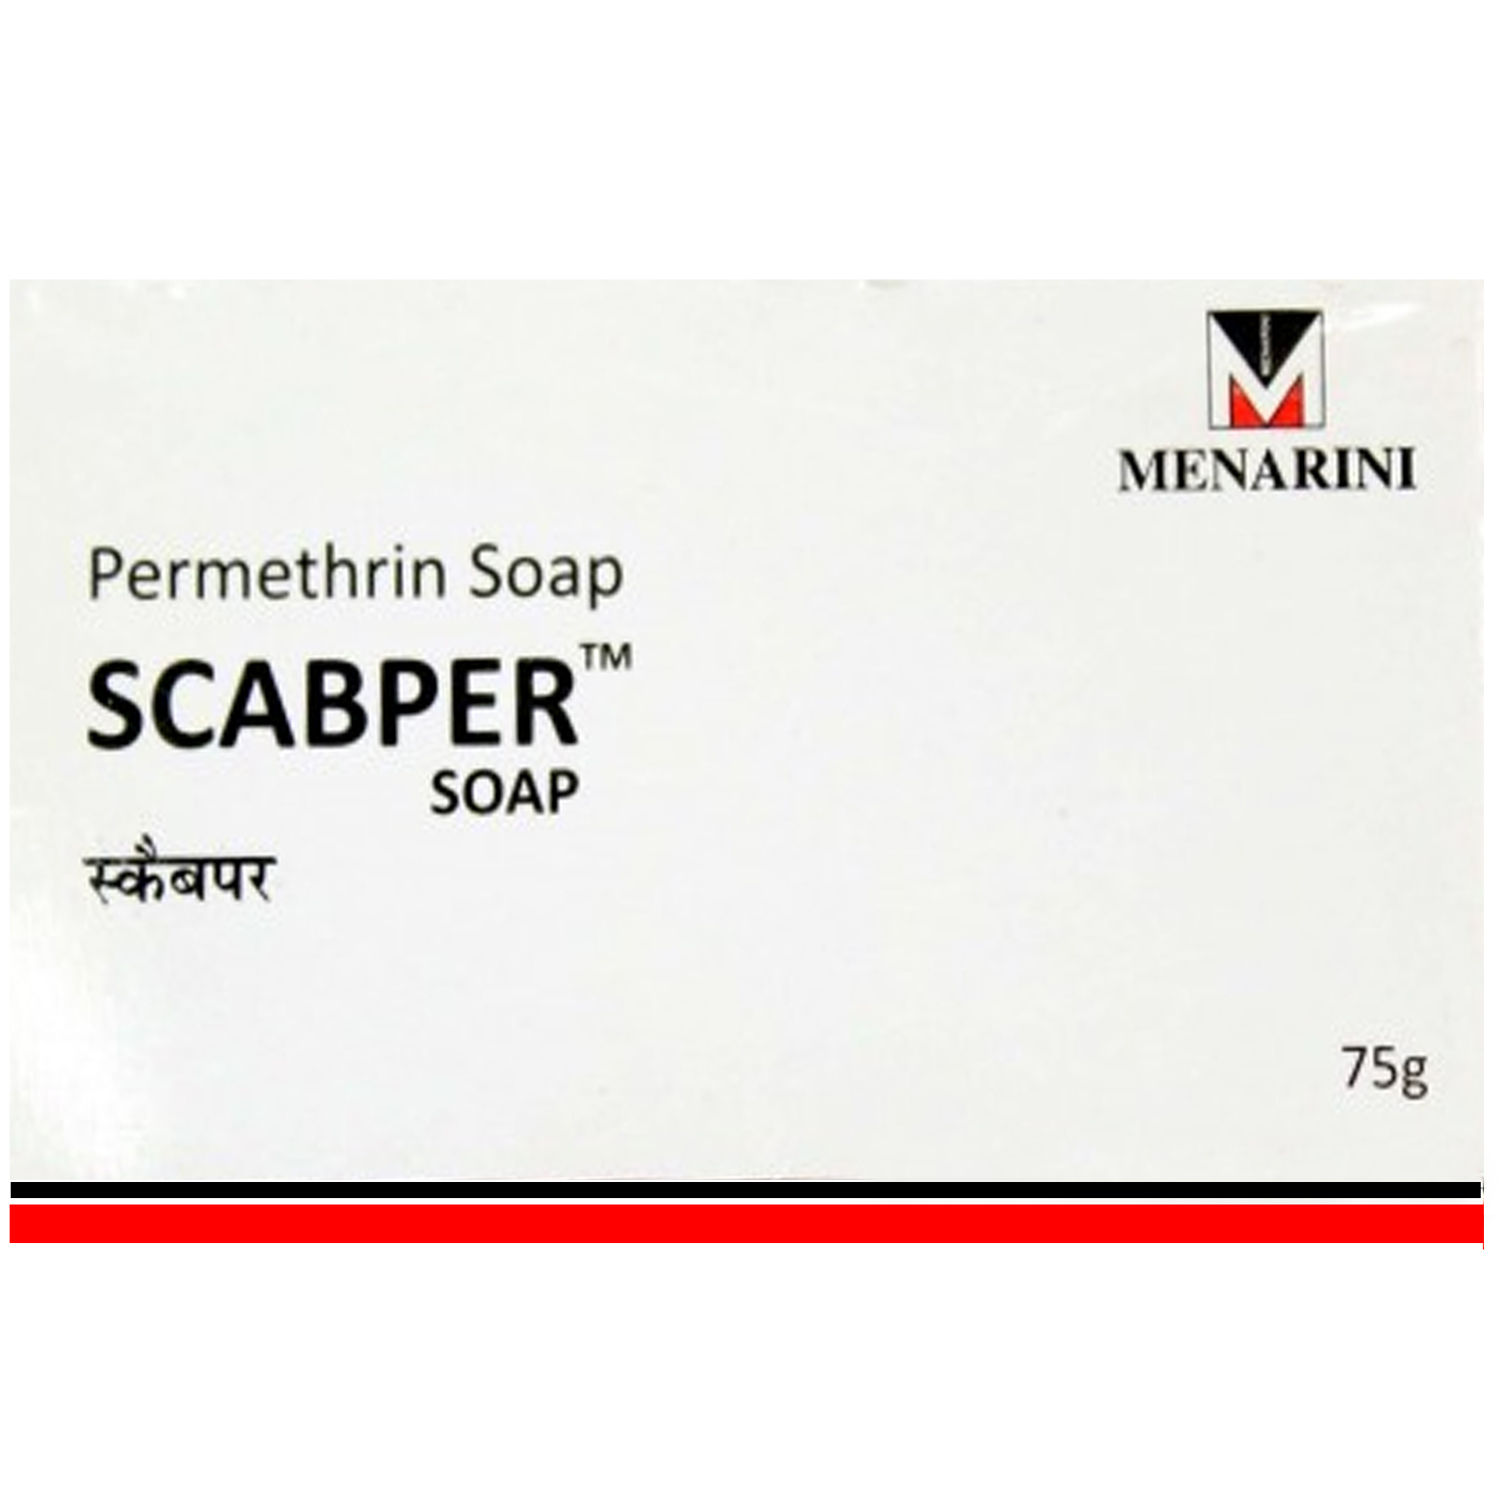 Buy Scabper Soap, 75 gm Online